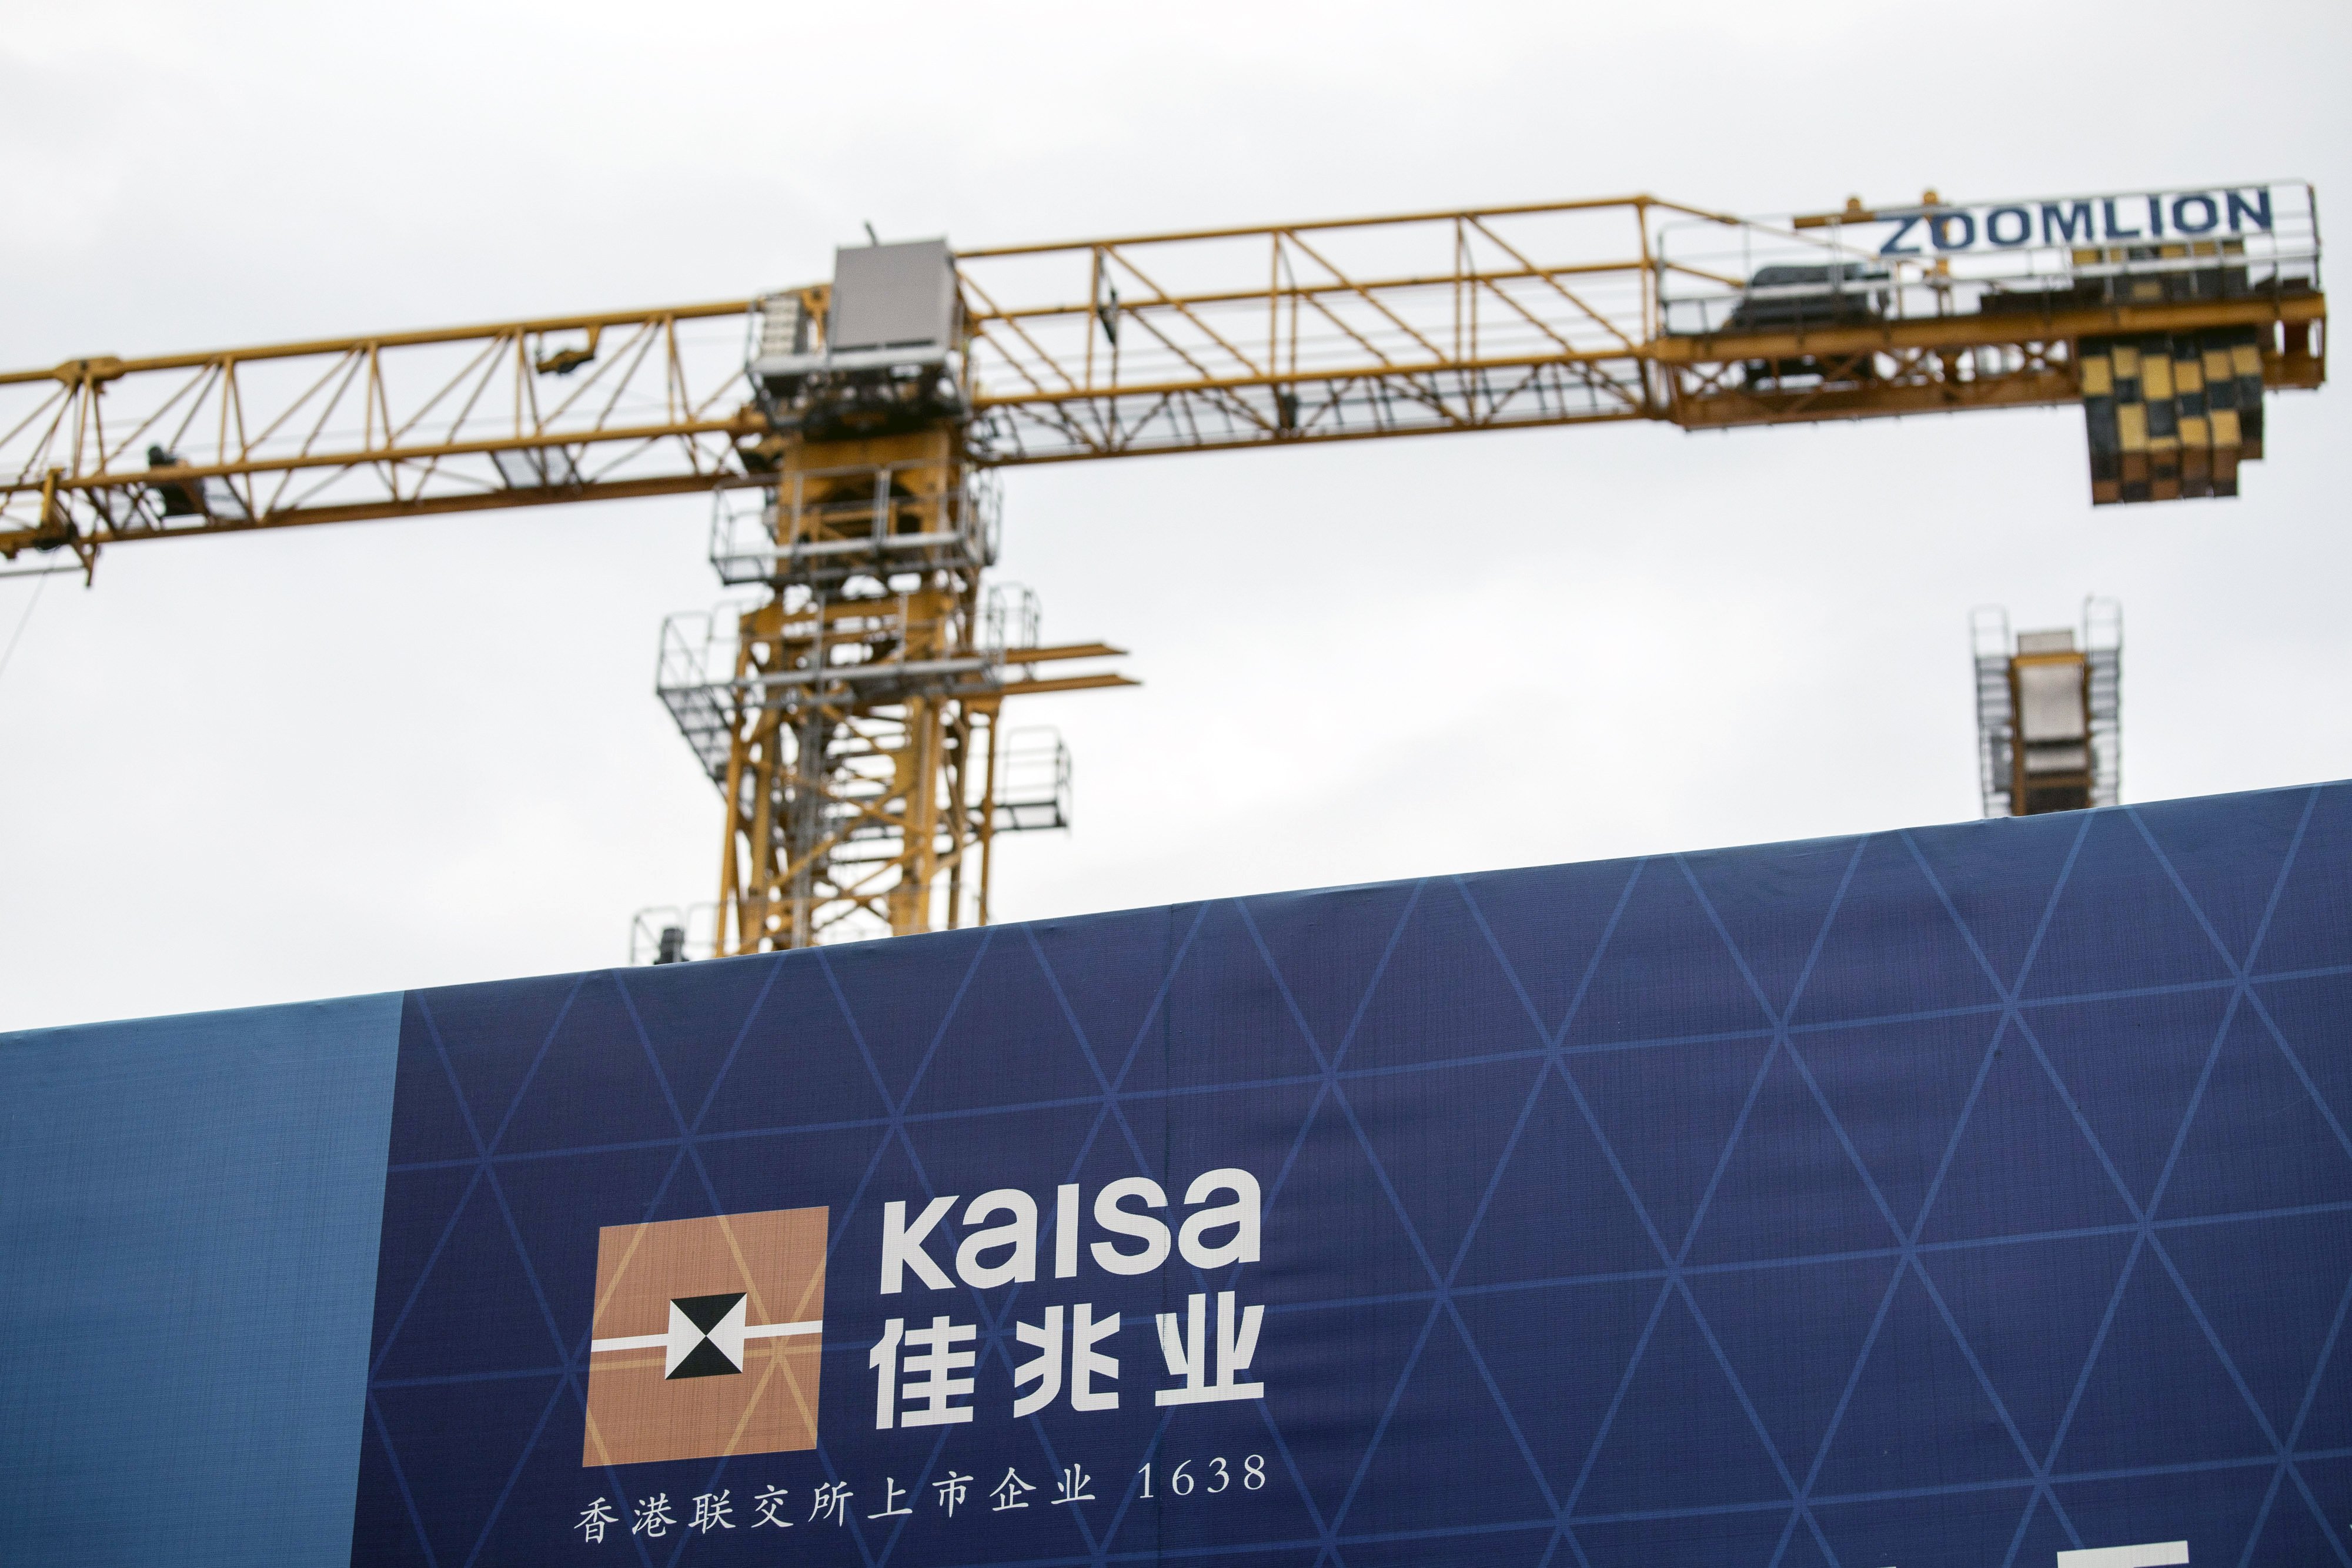 Kaisa Group Holdings’ City Plaza development under construction in Shanghai on November 16, 2021. Photo: Bloomberg.